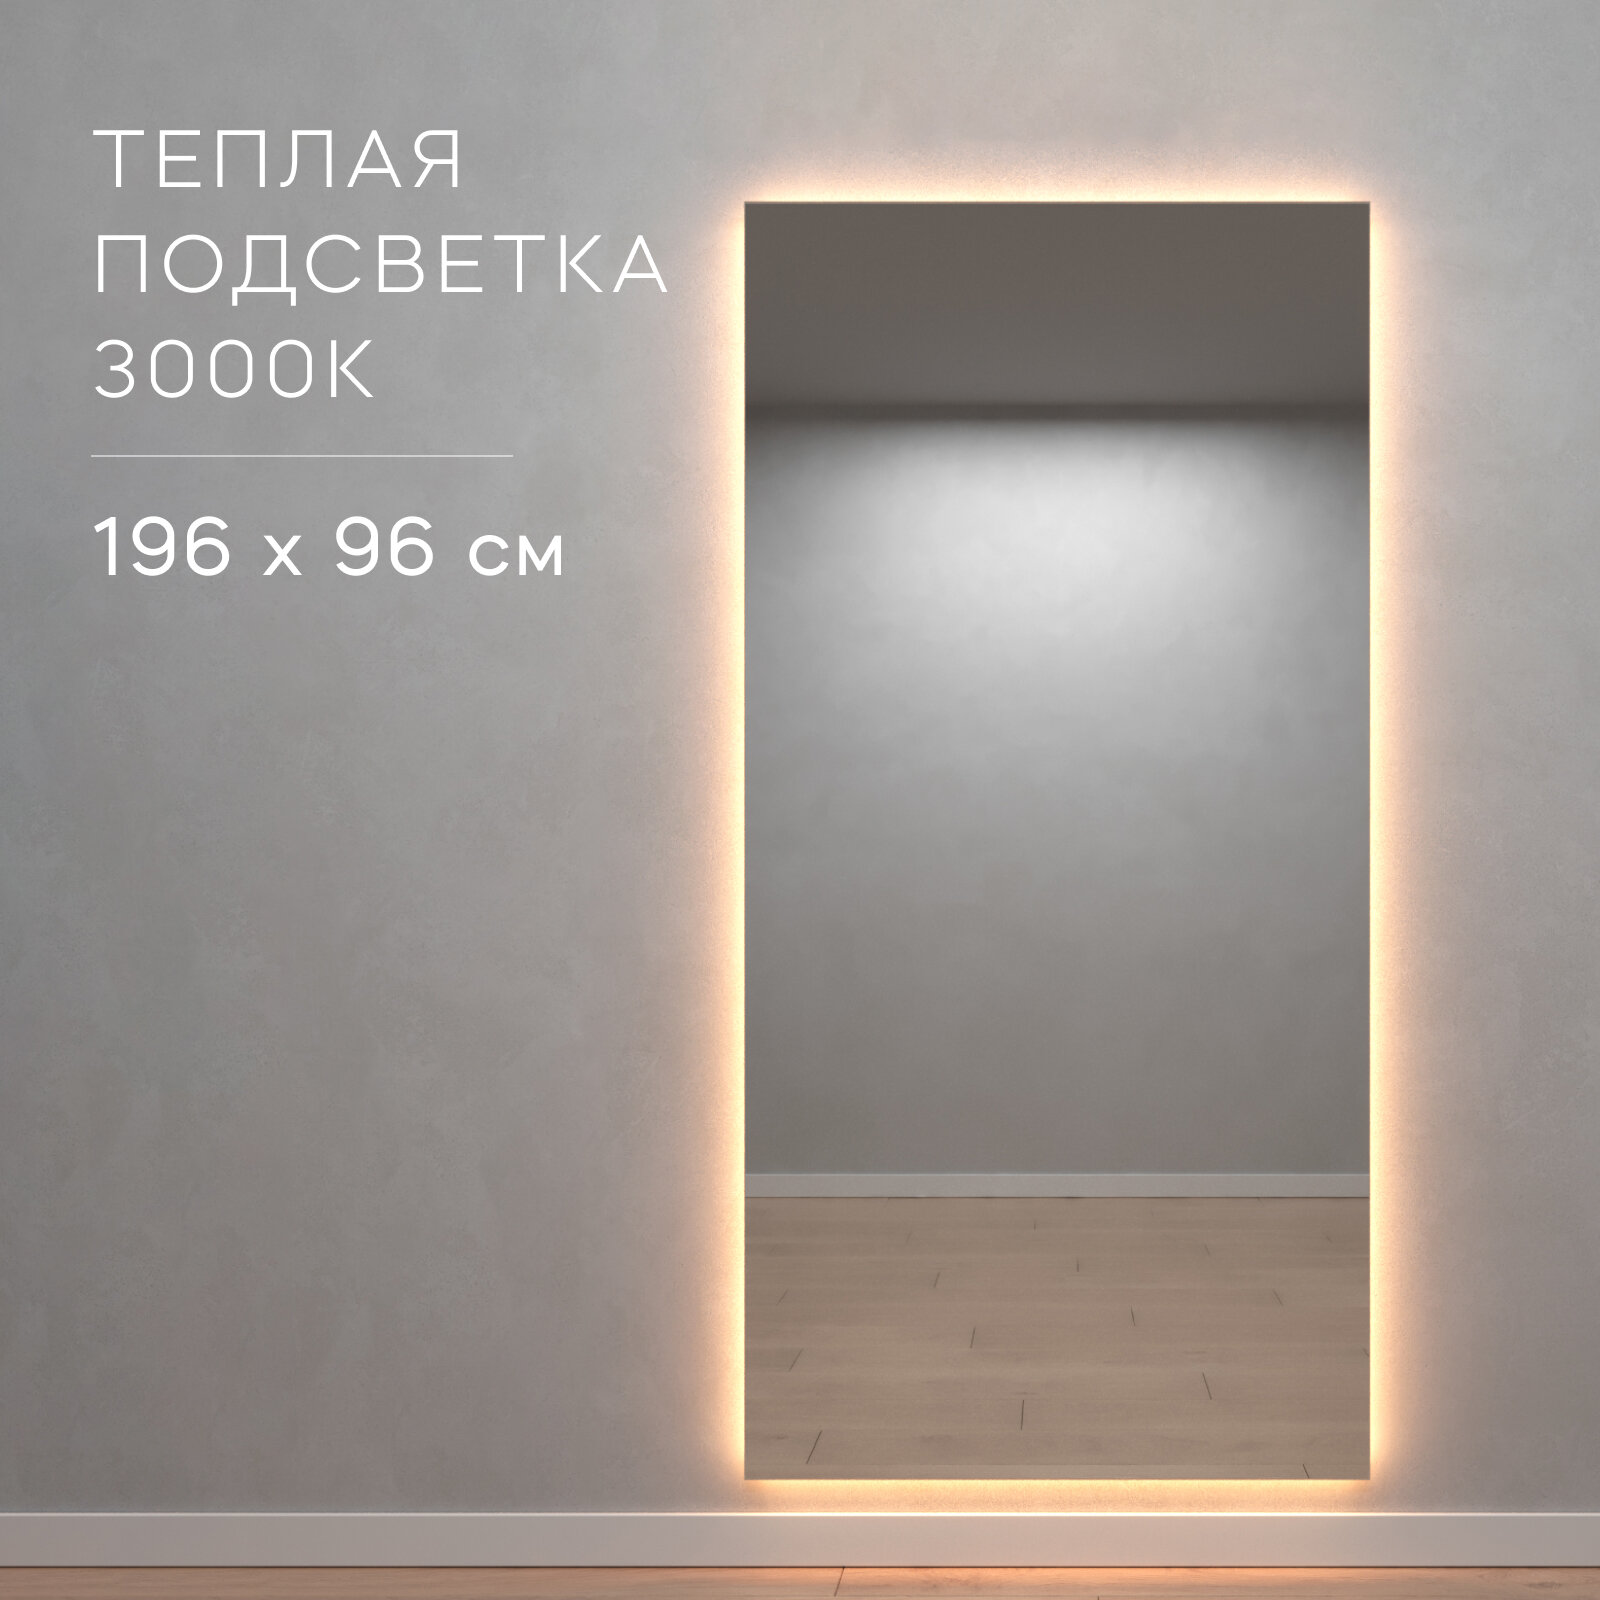 GENGLASS Зеркало настенное прямоугольное с тёплой подсветкой LED XL 196x96 см, дизайнерское